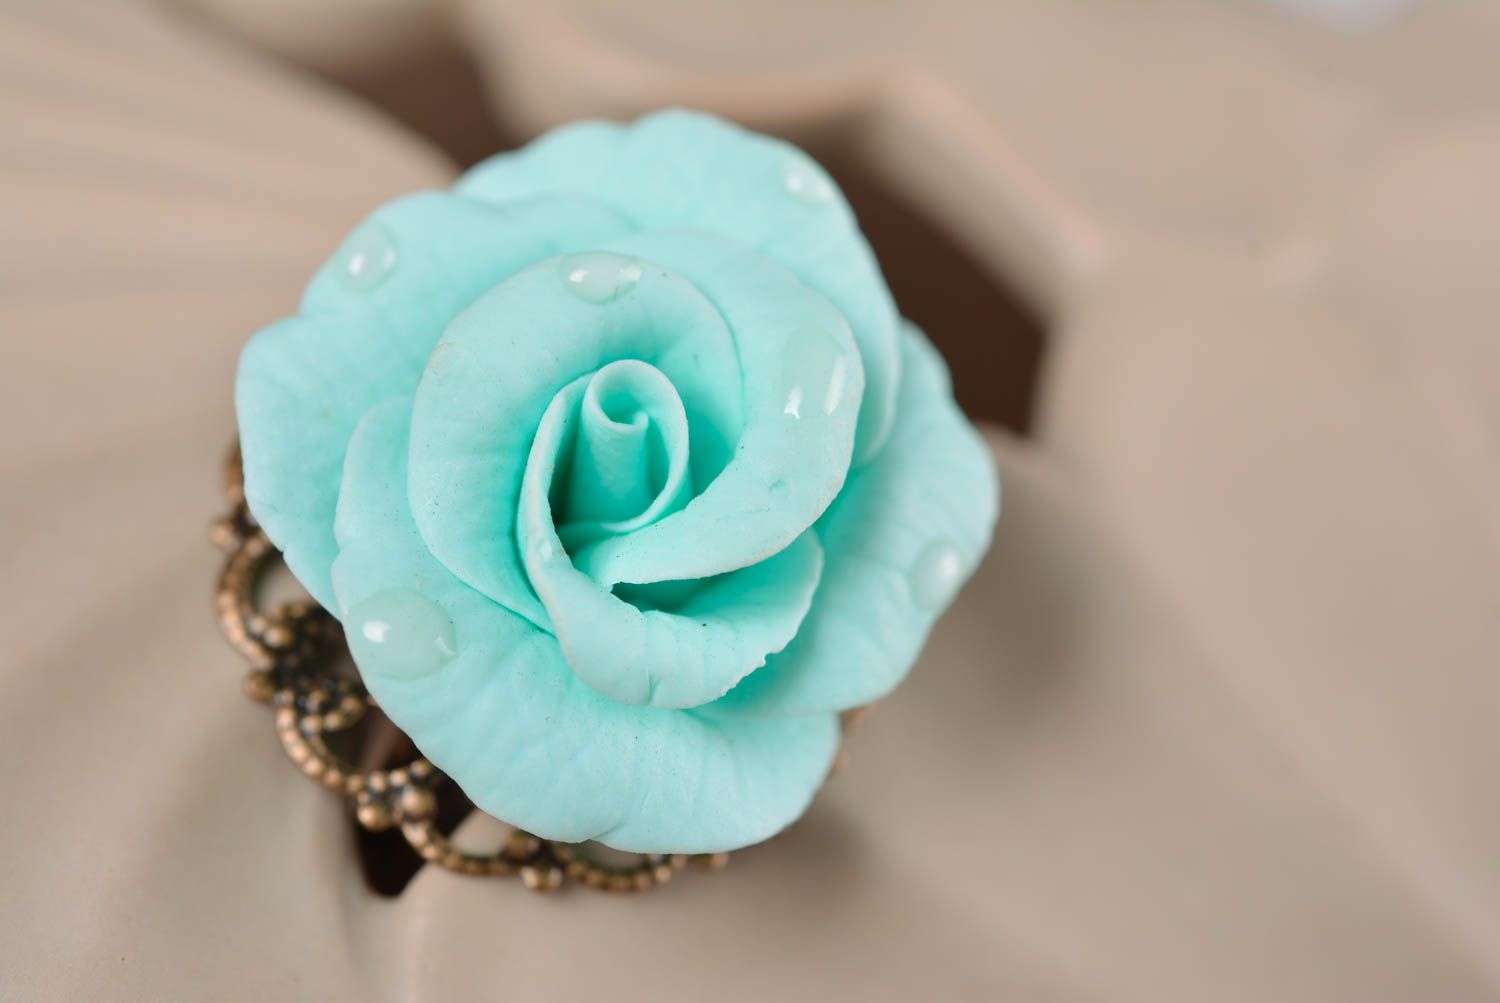 Кольцо с цветком из полимерной глины голубое крупное нежное красивое хэнд мейд фото 1